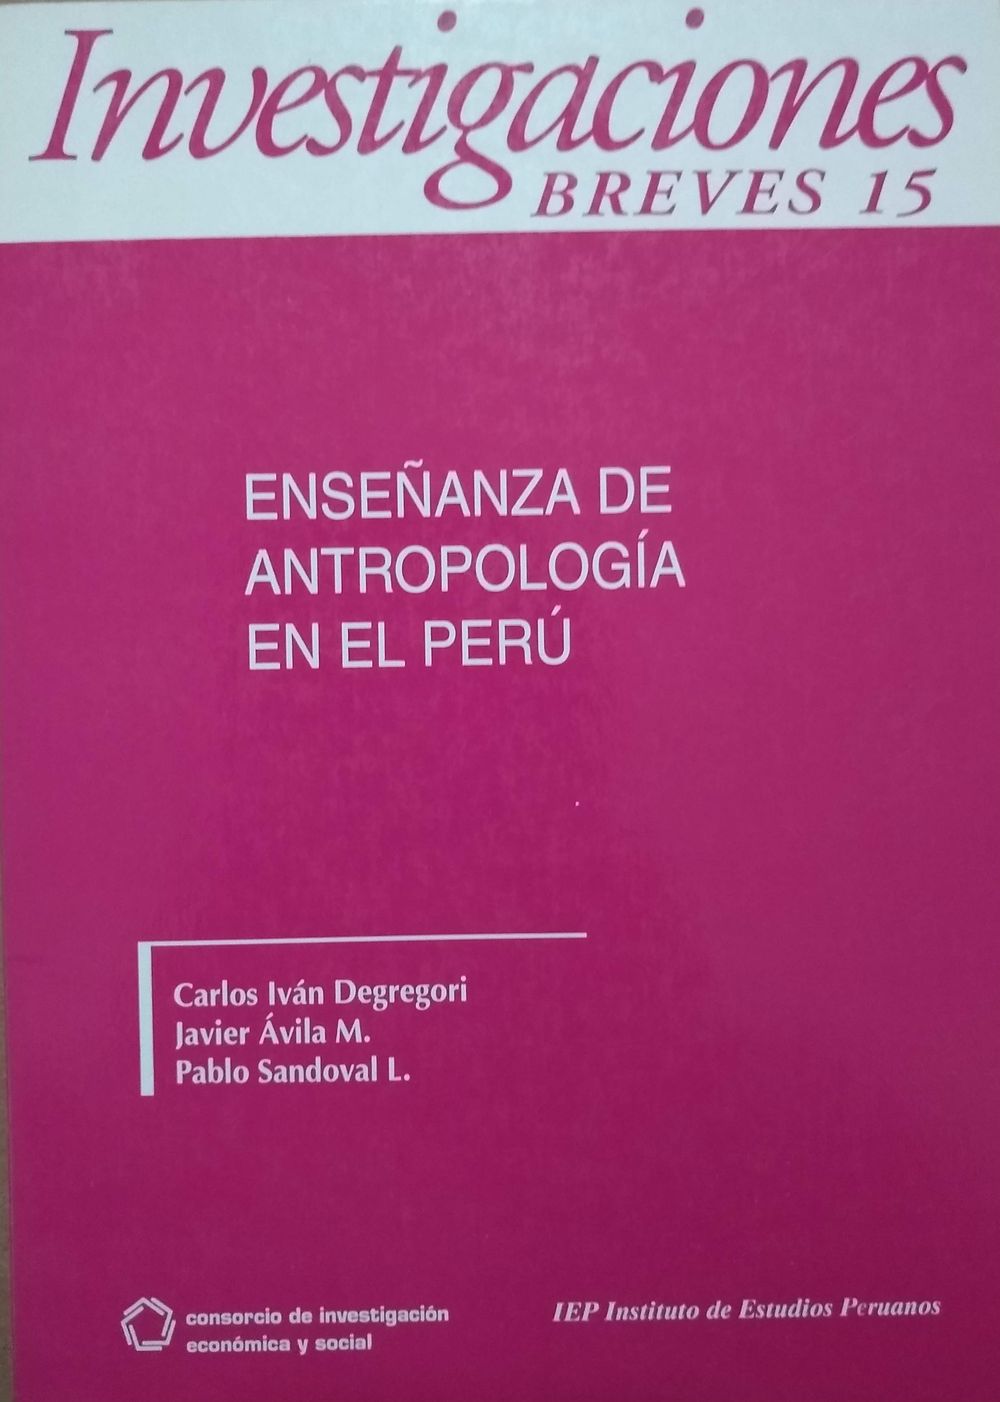 Enseñanza de Antropología en el Perú